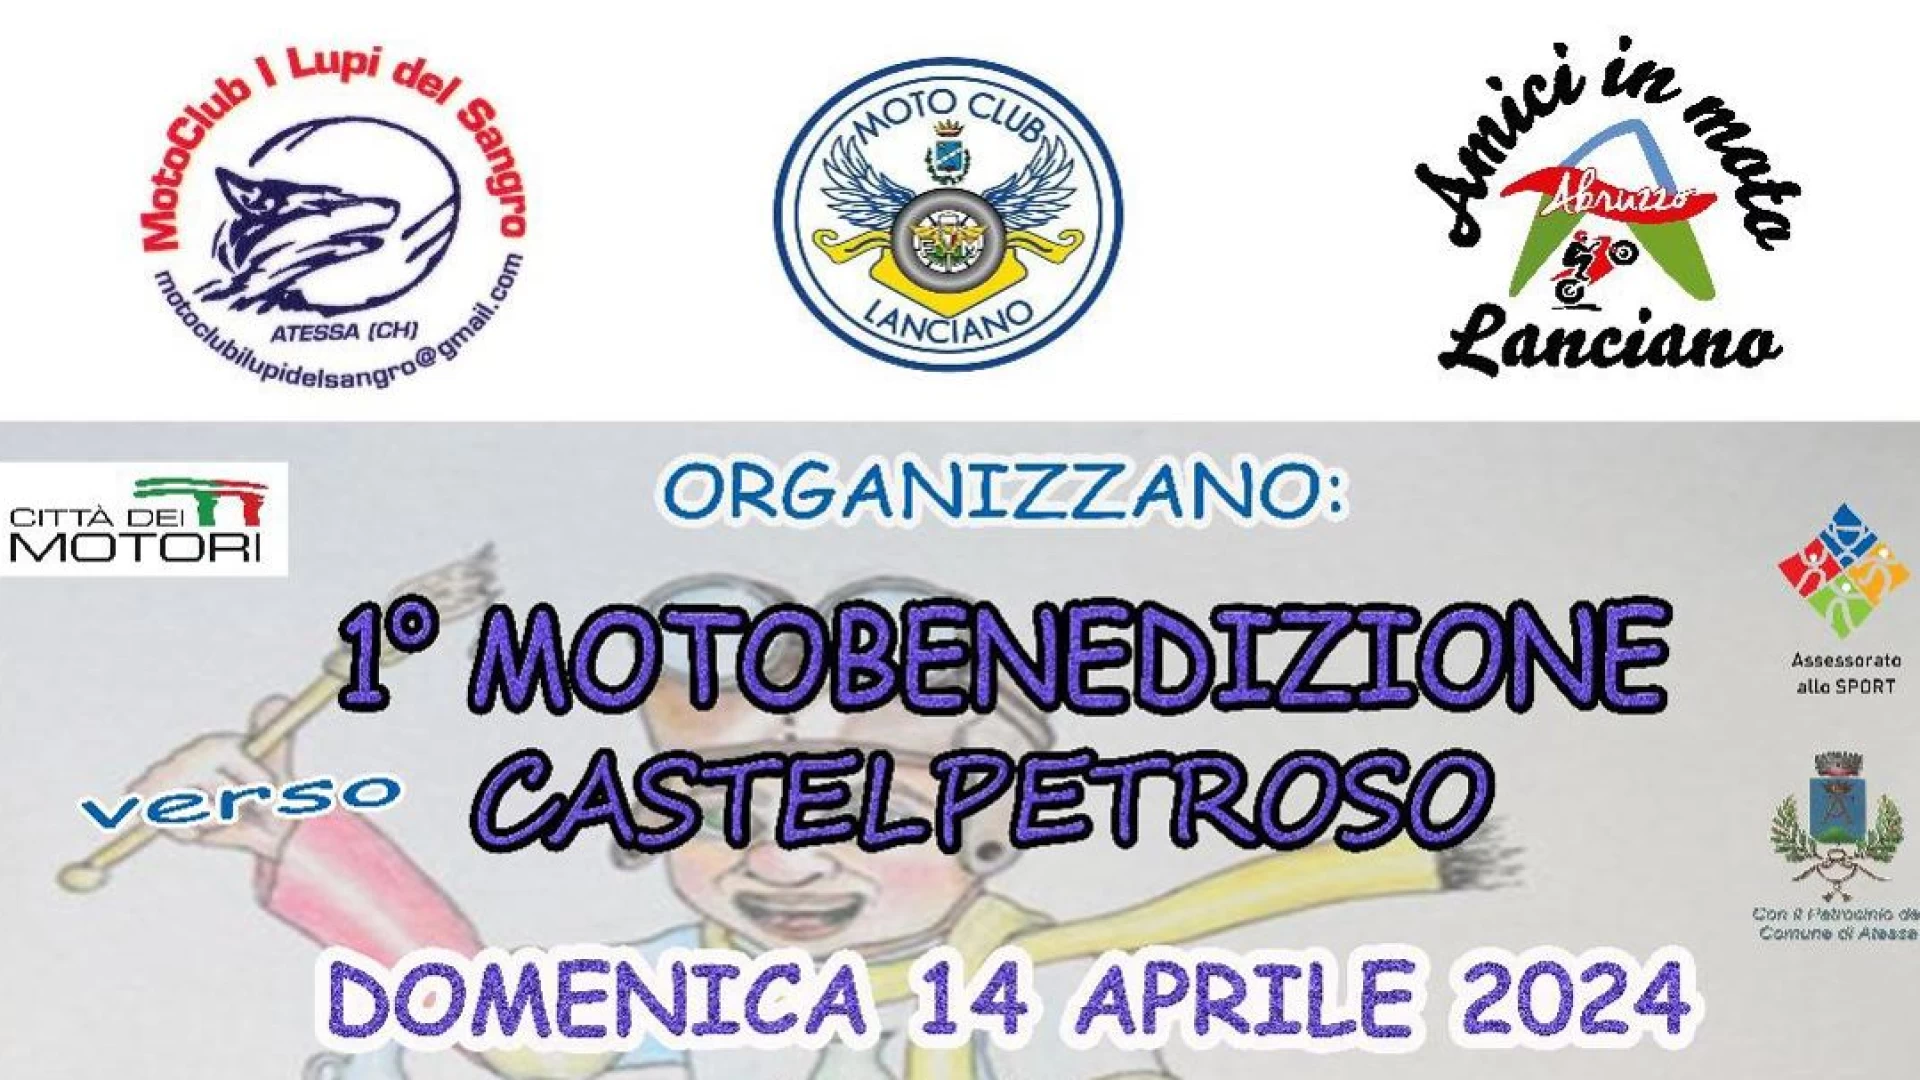 Domenica 14 aprile la prima edizione della “Motobenedizione” nel Molise. Protagonisti i motociclisti abruzzesi di due gruppi “I Lupi del Sangro”,“Gli Amici in Moto” e “Motoclub Lanciano”.